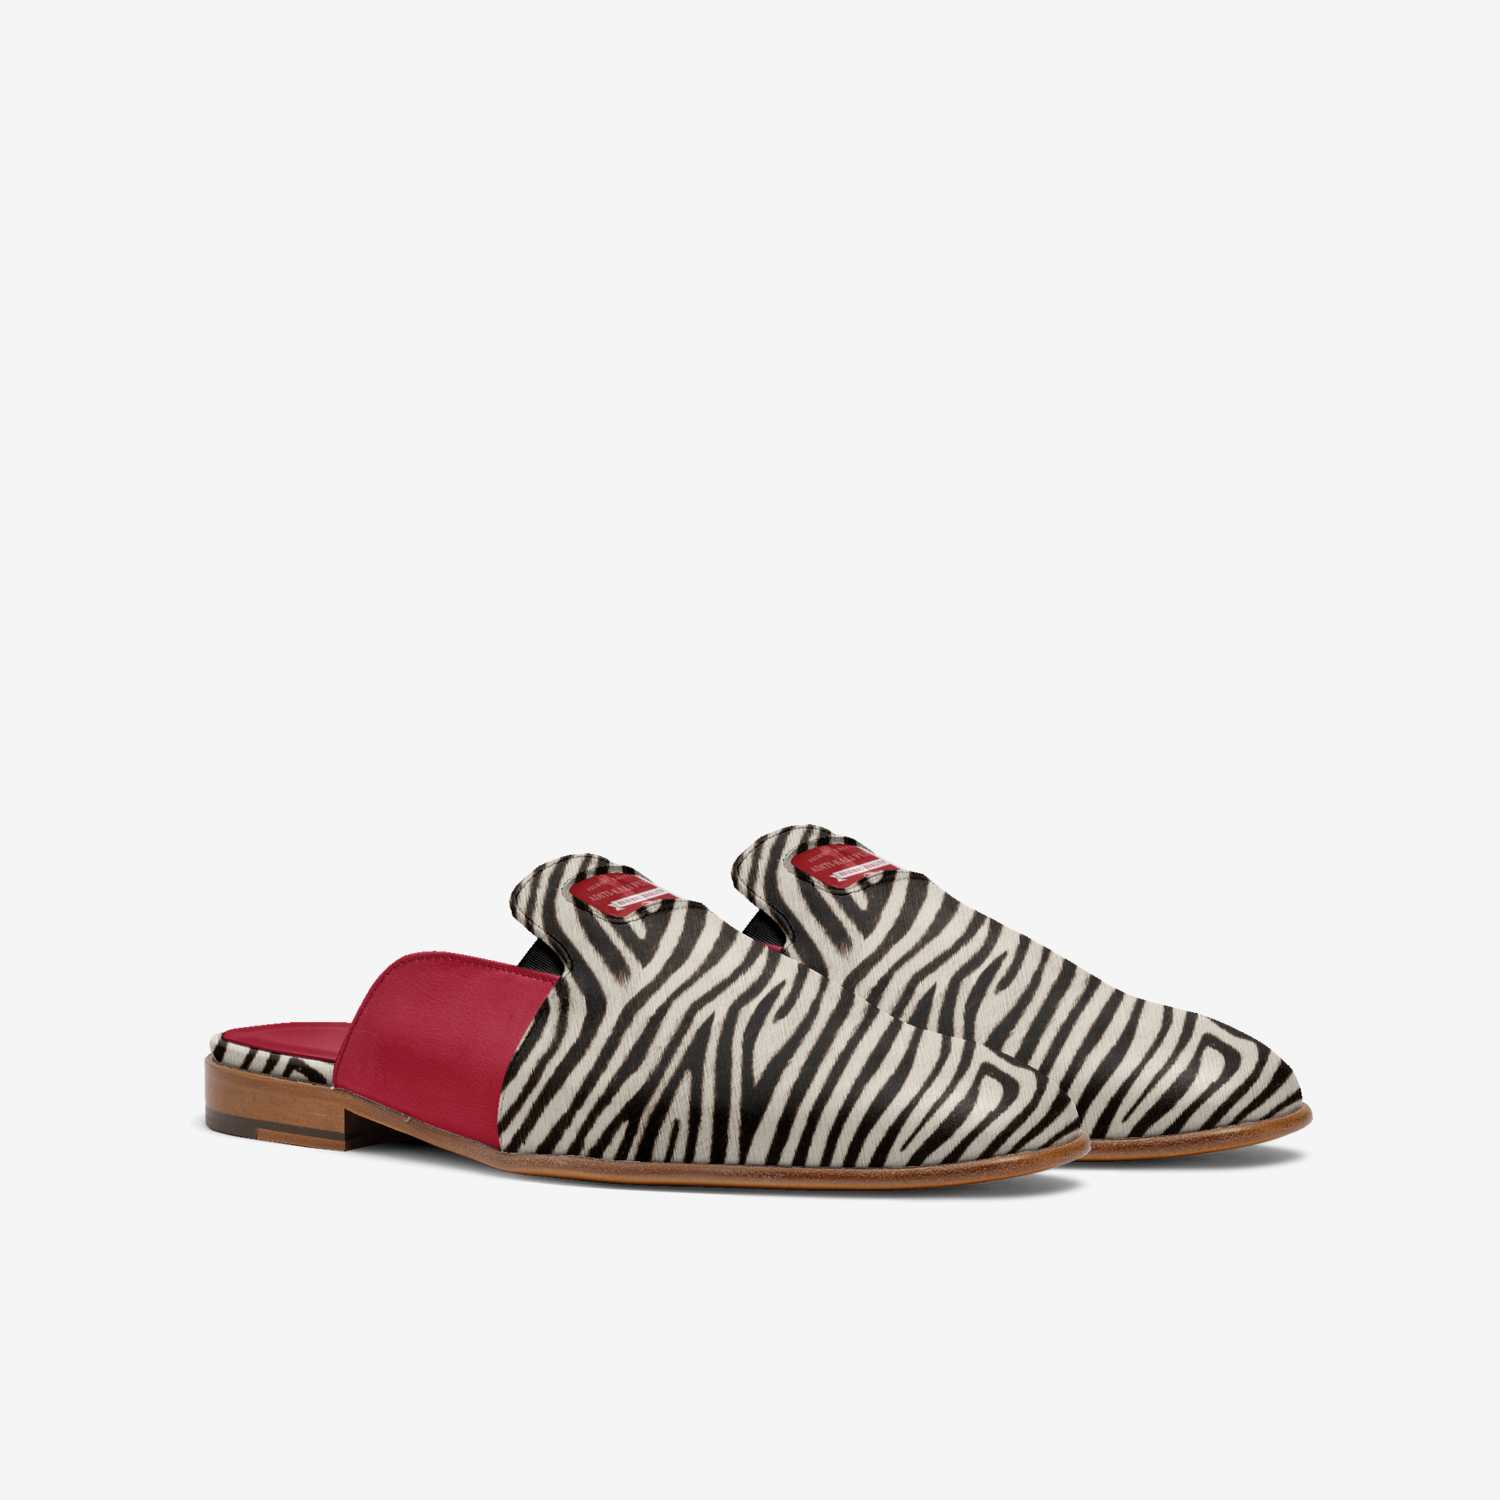 aditi-kali fusions- elegant slipper design-red,black, zebra stripe Wonkey Donkey Bazaar